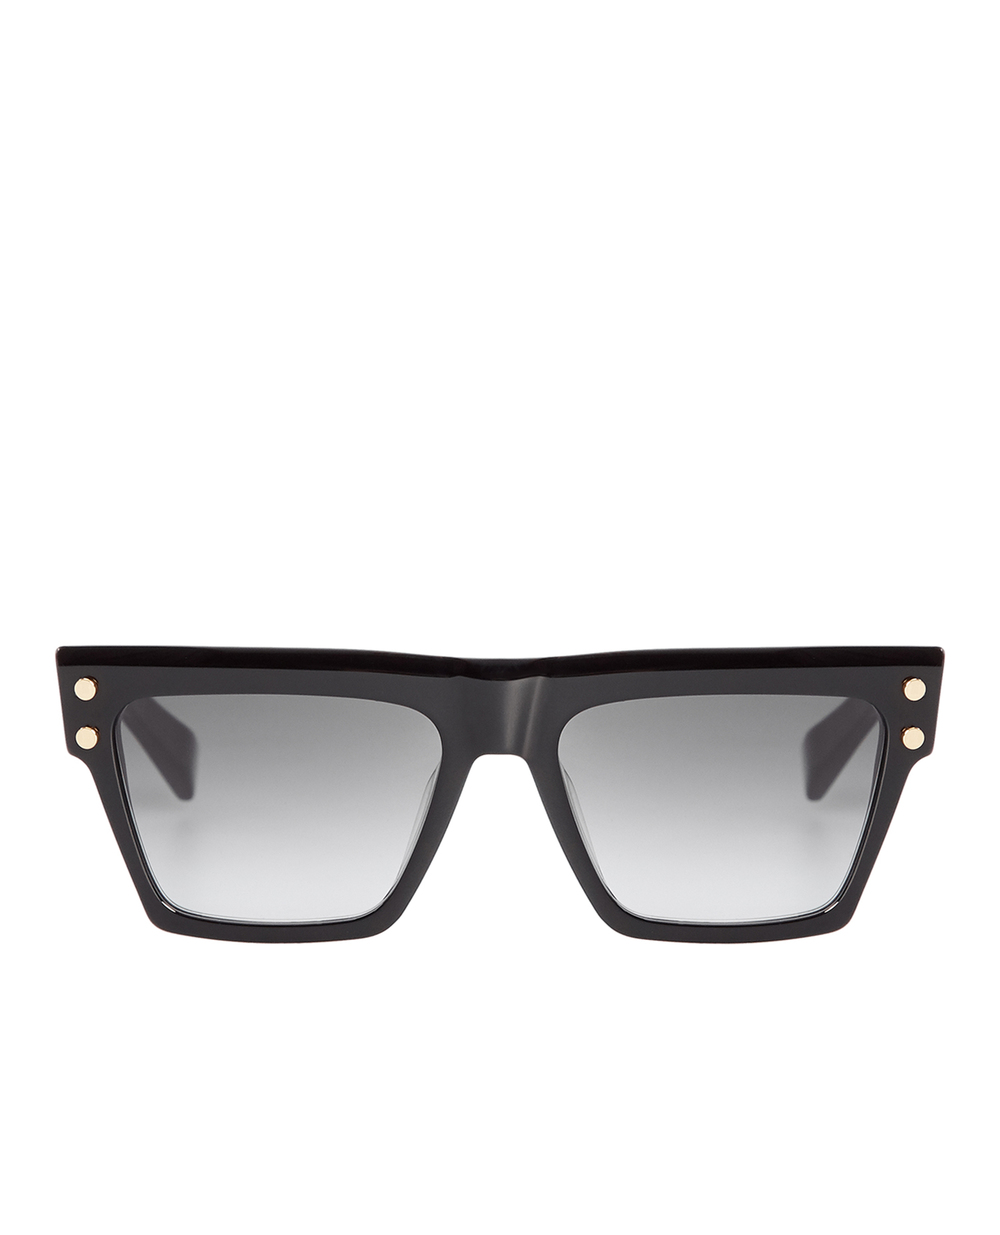 Солнцезащитные очки Balmain BPS-121A-54, черный цвет • Купить в интернет-магазине Kameron